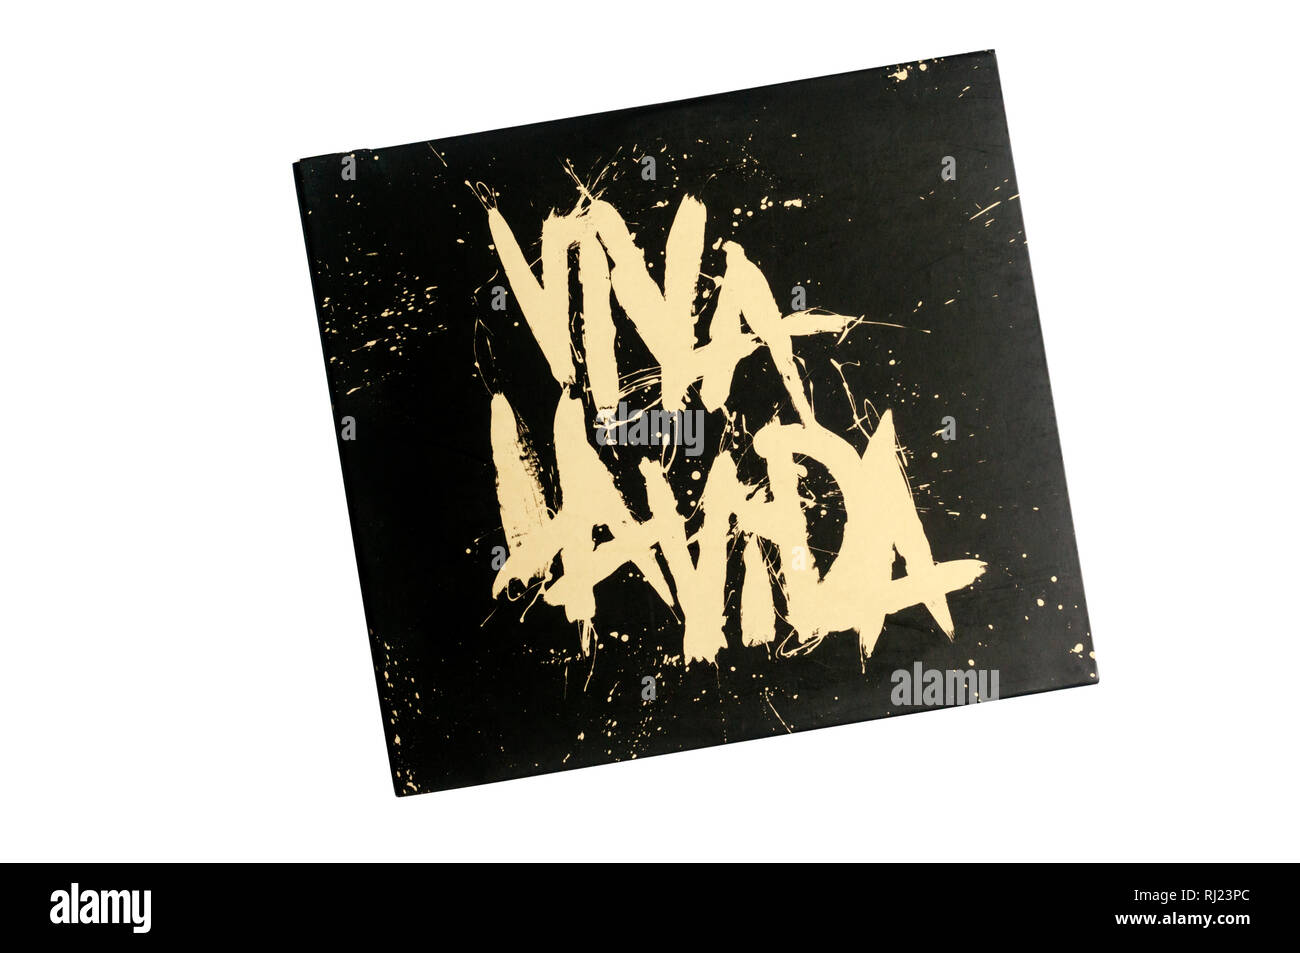 Viva La Vida o la morte e tutti i suoi amici, spesso chiamato soltanto Viva La Vida, è stato il quarto album di Coldplay, rilasciato nel 2008. Foto Stock